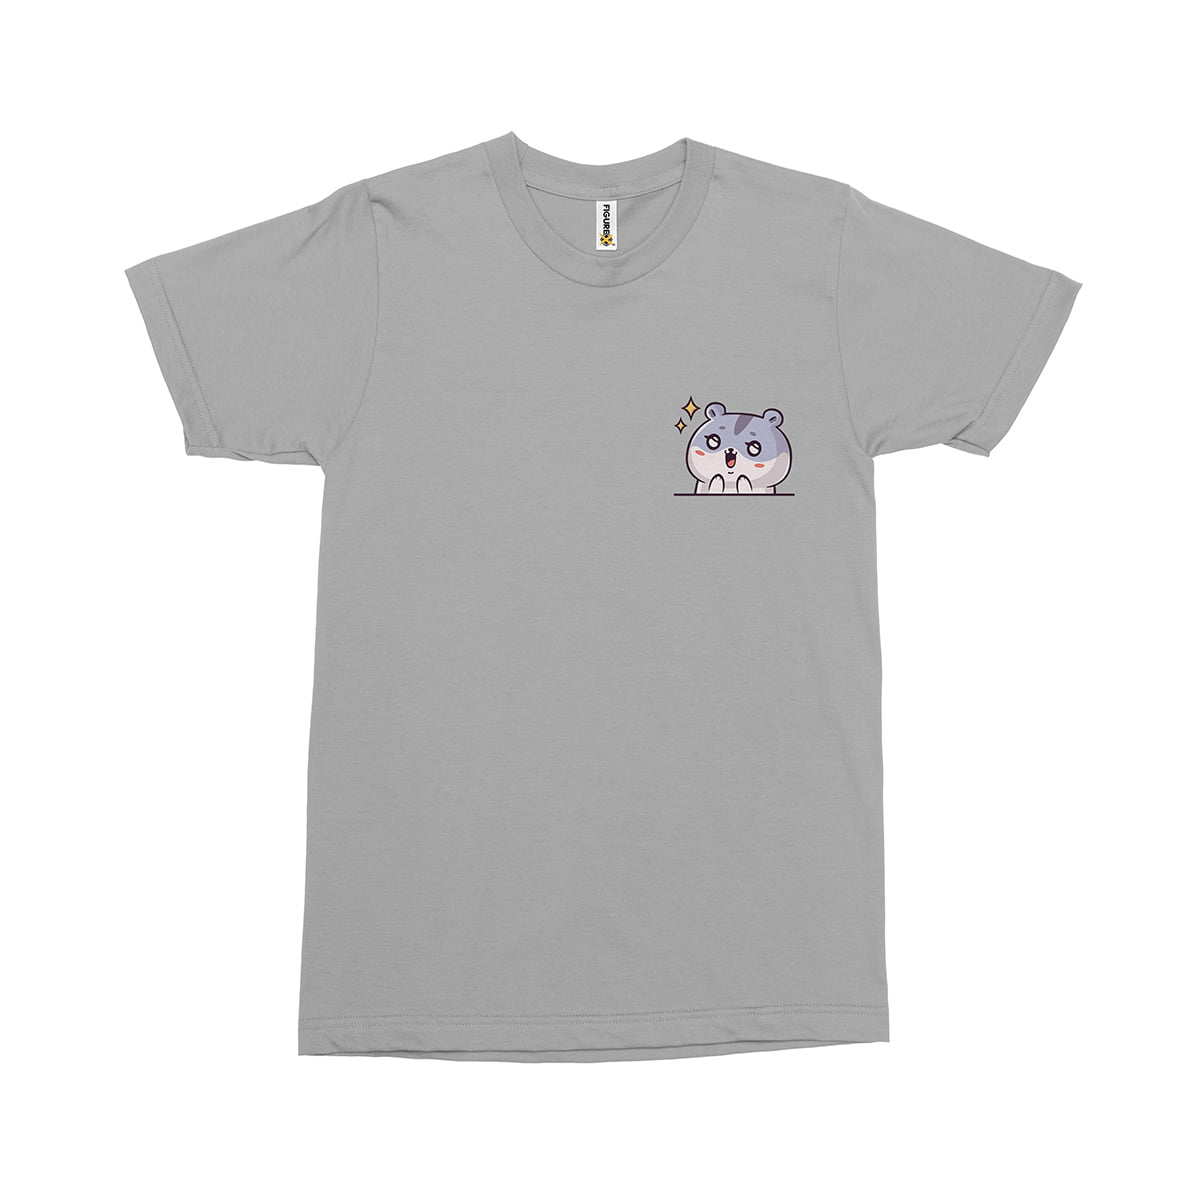 Japanese tatli hamster fxsca2132c erkek tshirt gri sag ust - ponçik hamster fanart baskılı erkek t-shirt - figurex